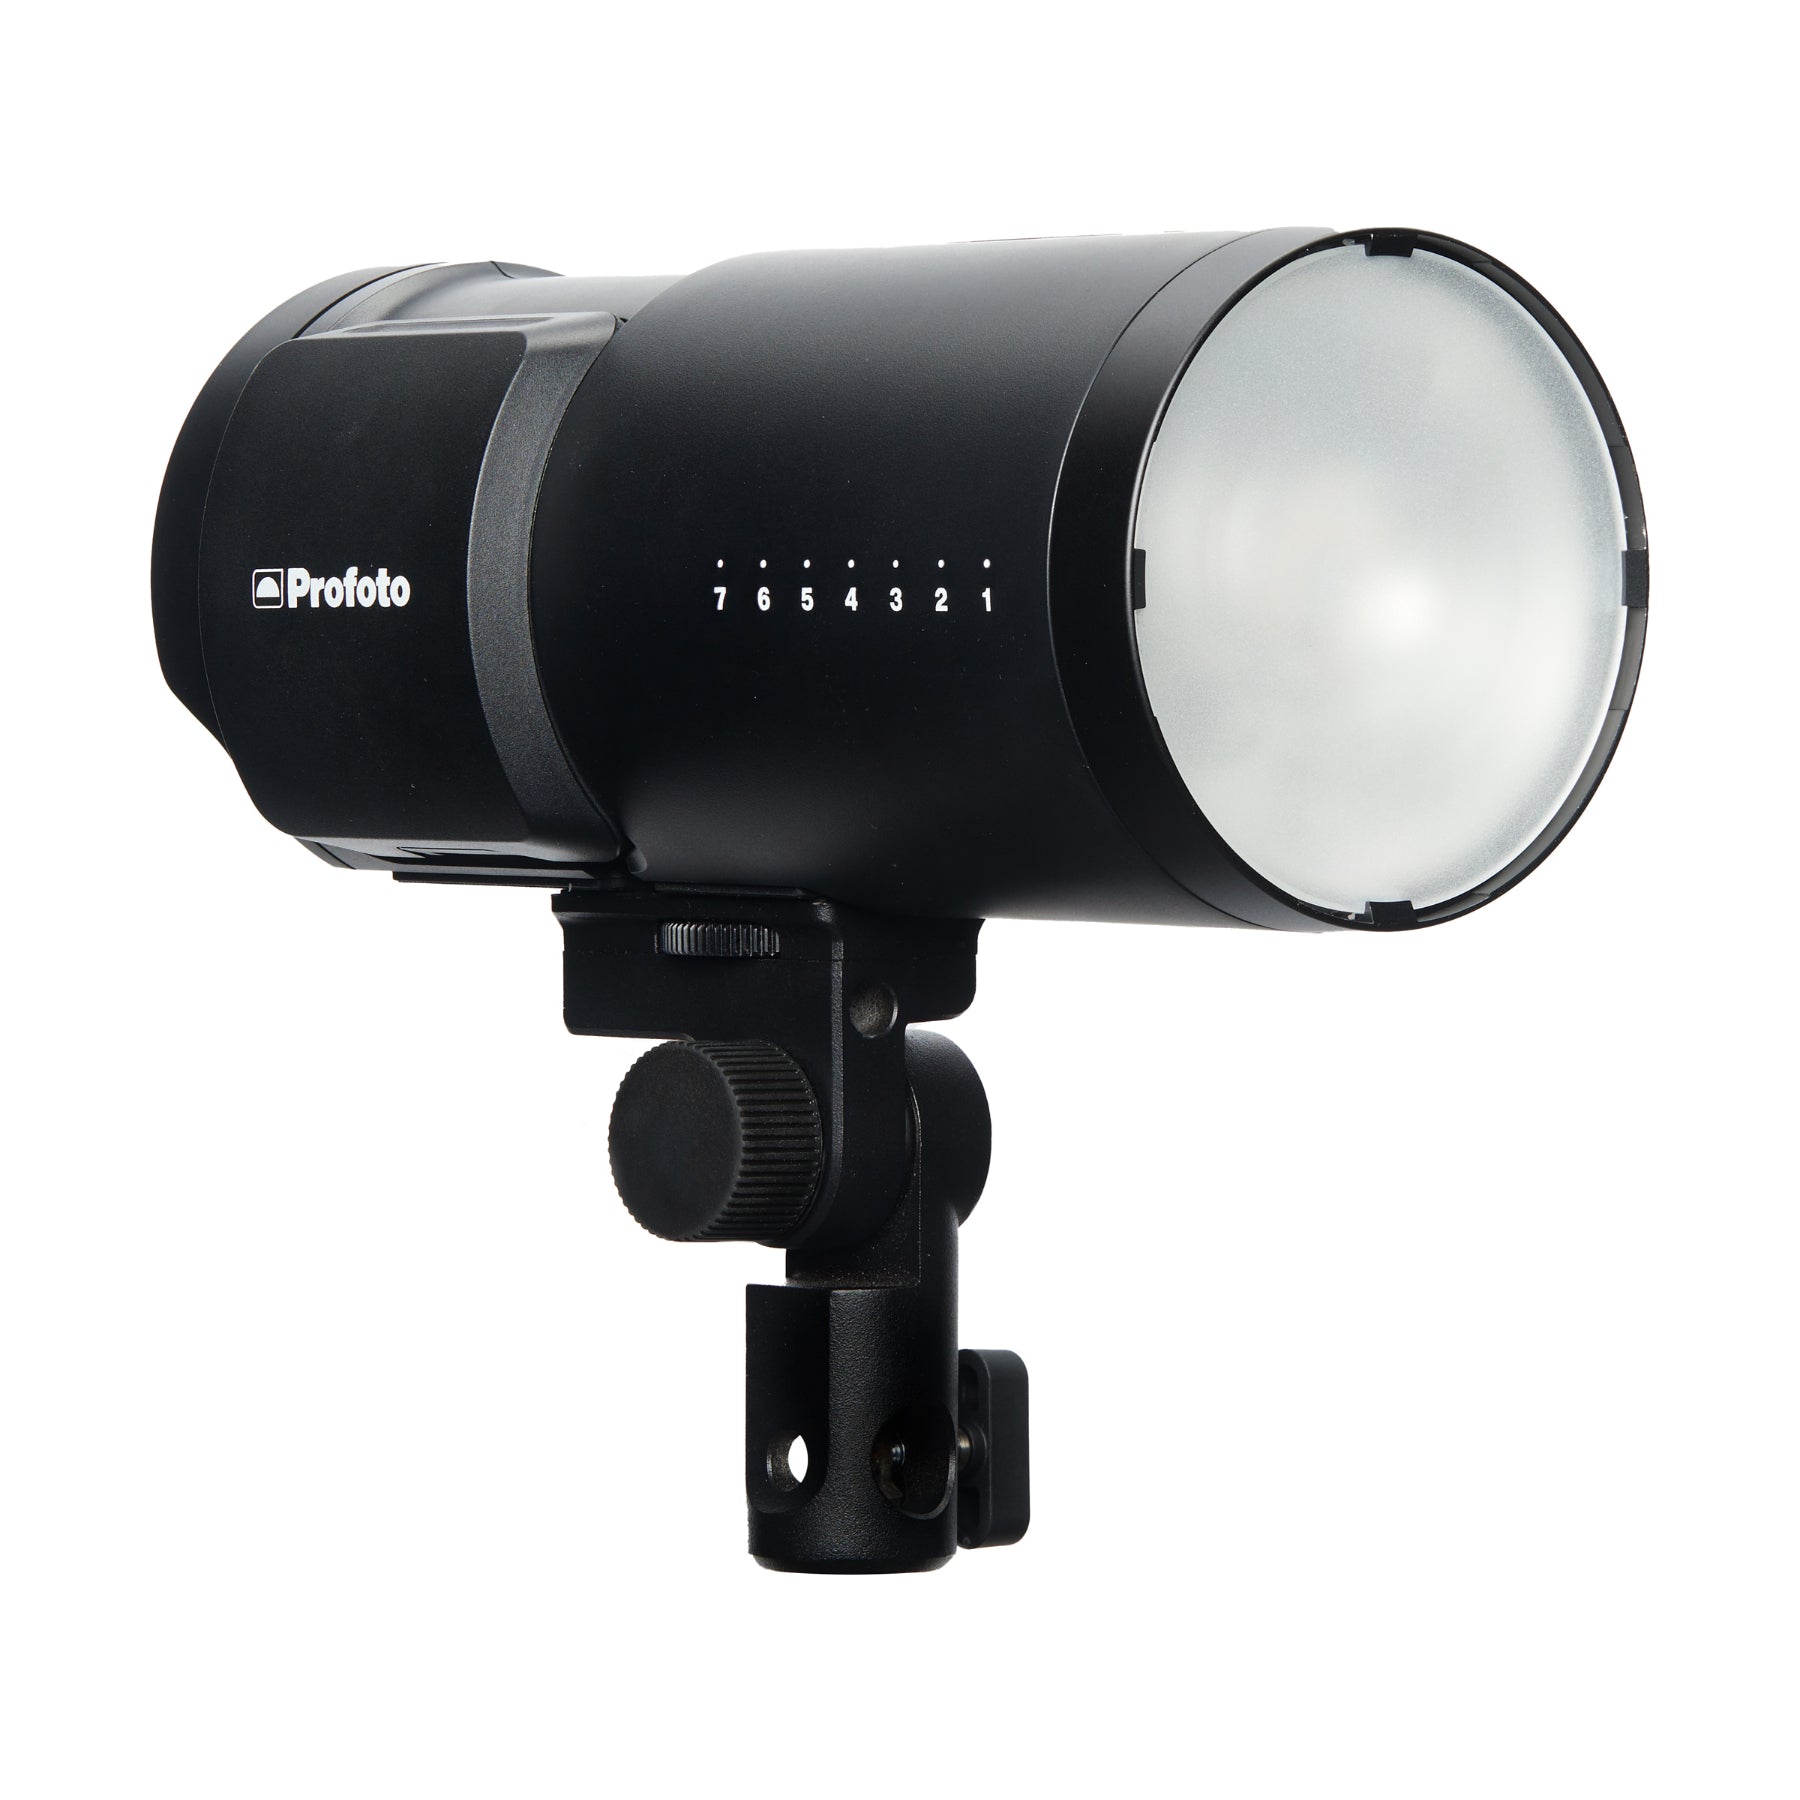 Profoto b10X plus single kit studio flash lighting for hire